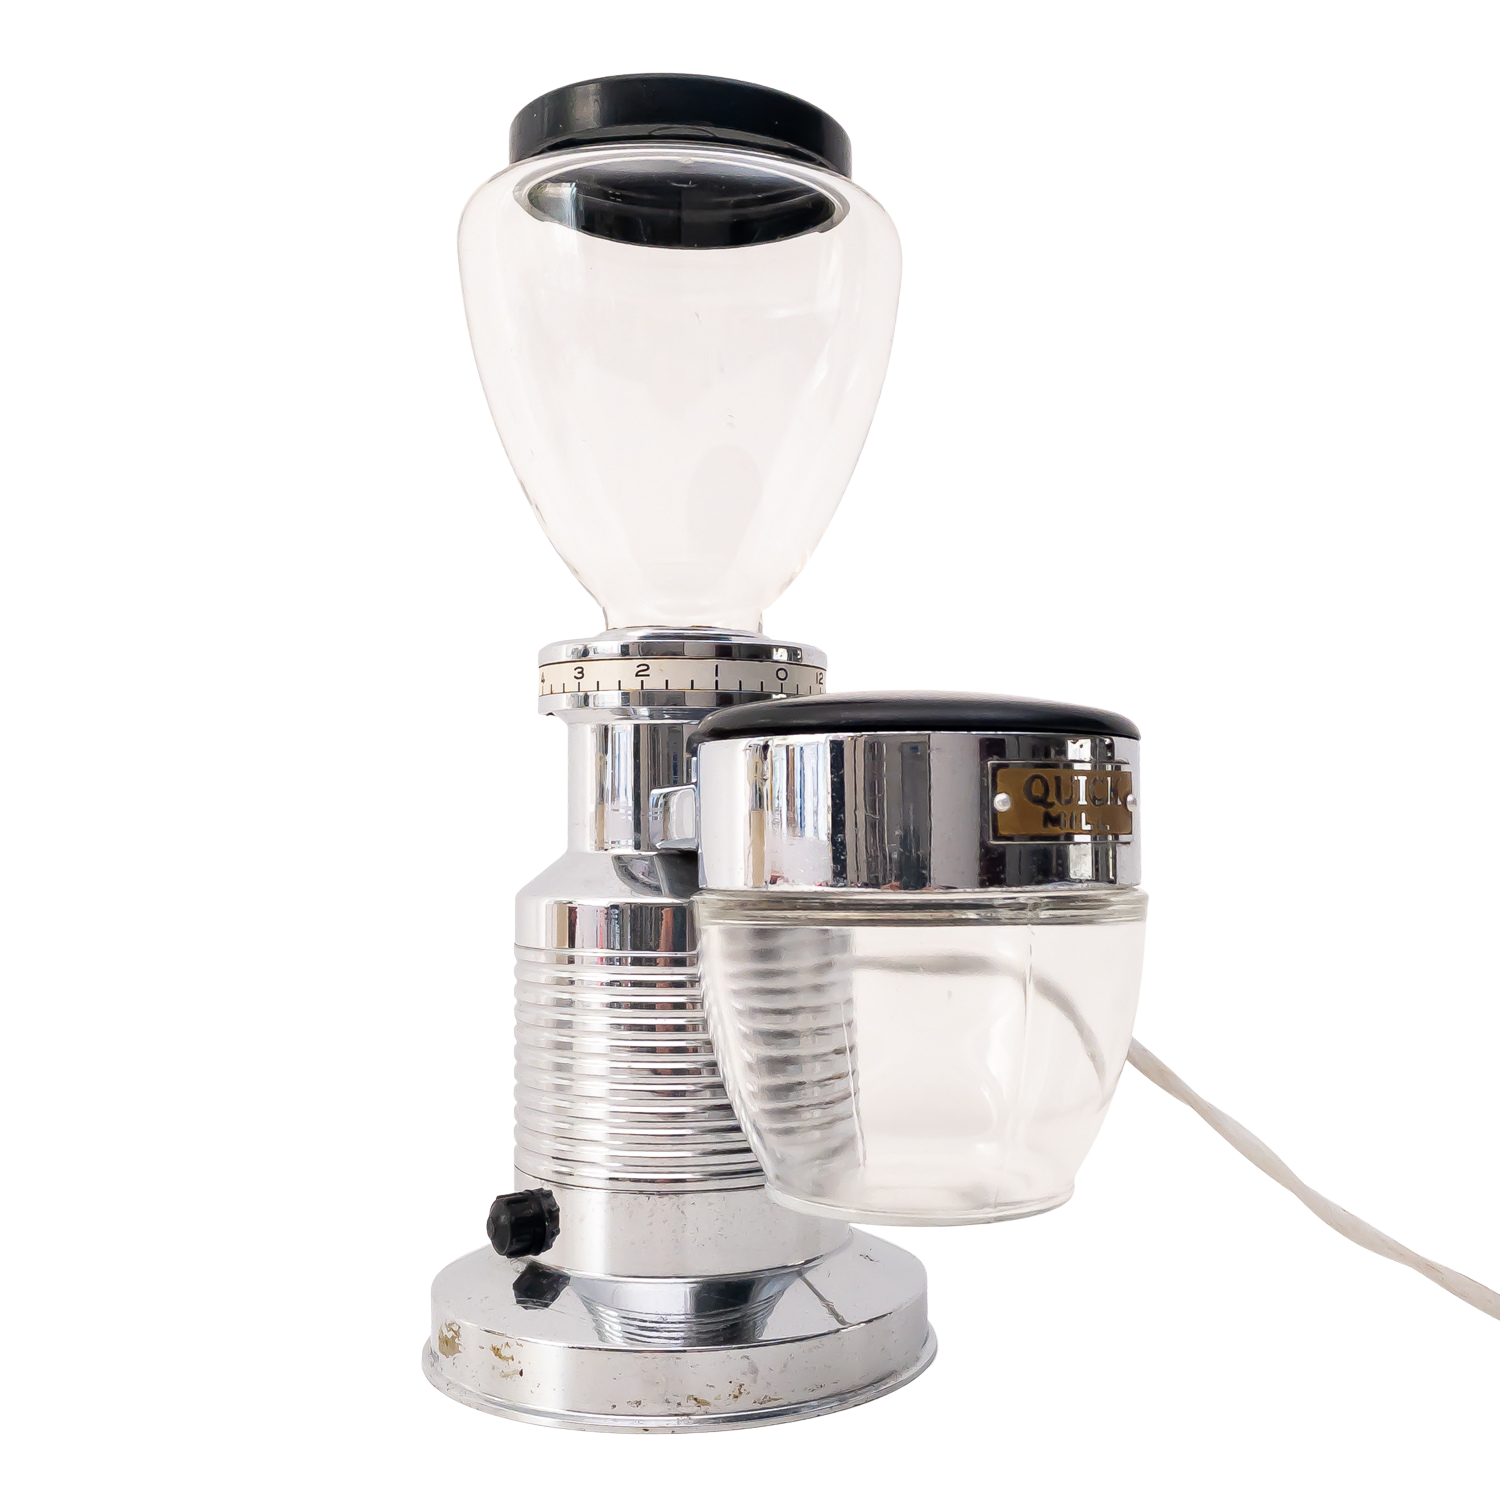 Vintage Quik Mill Omre electric coffee grinder